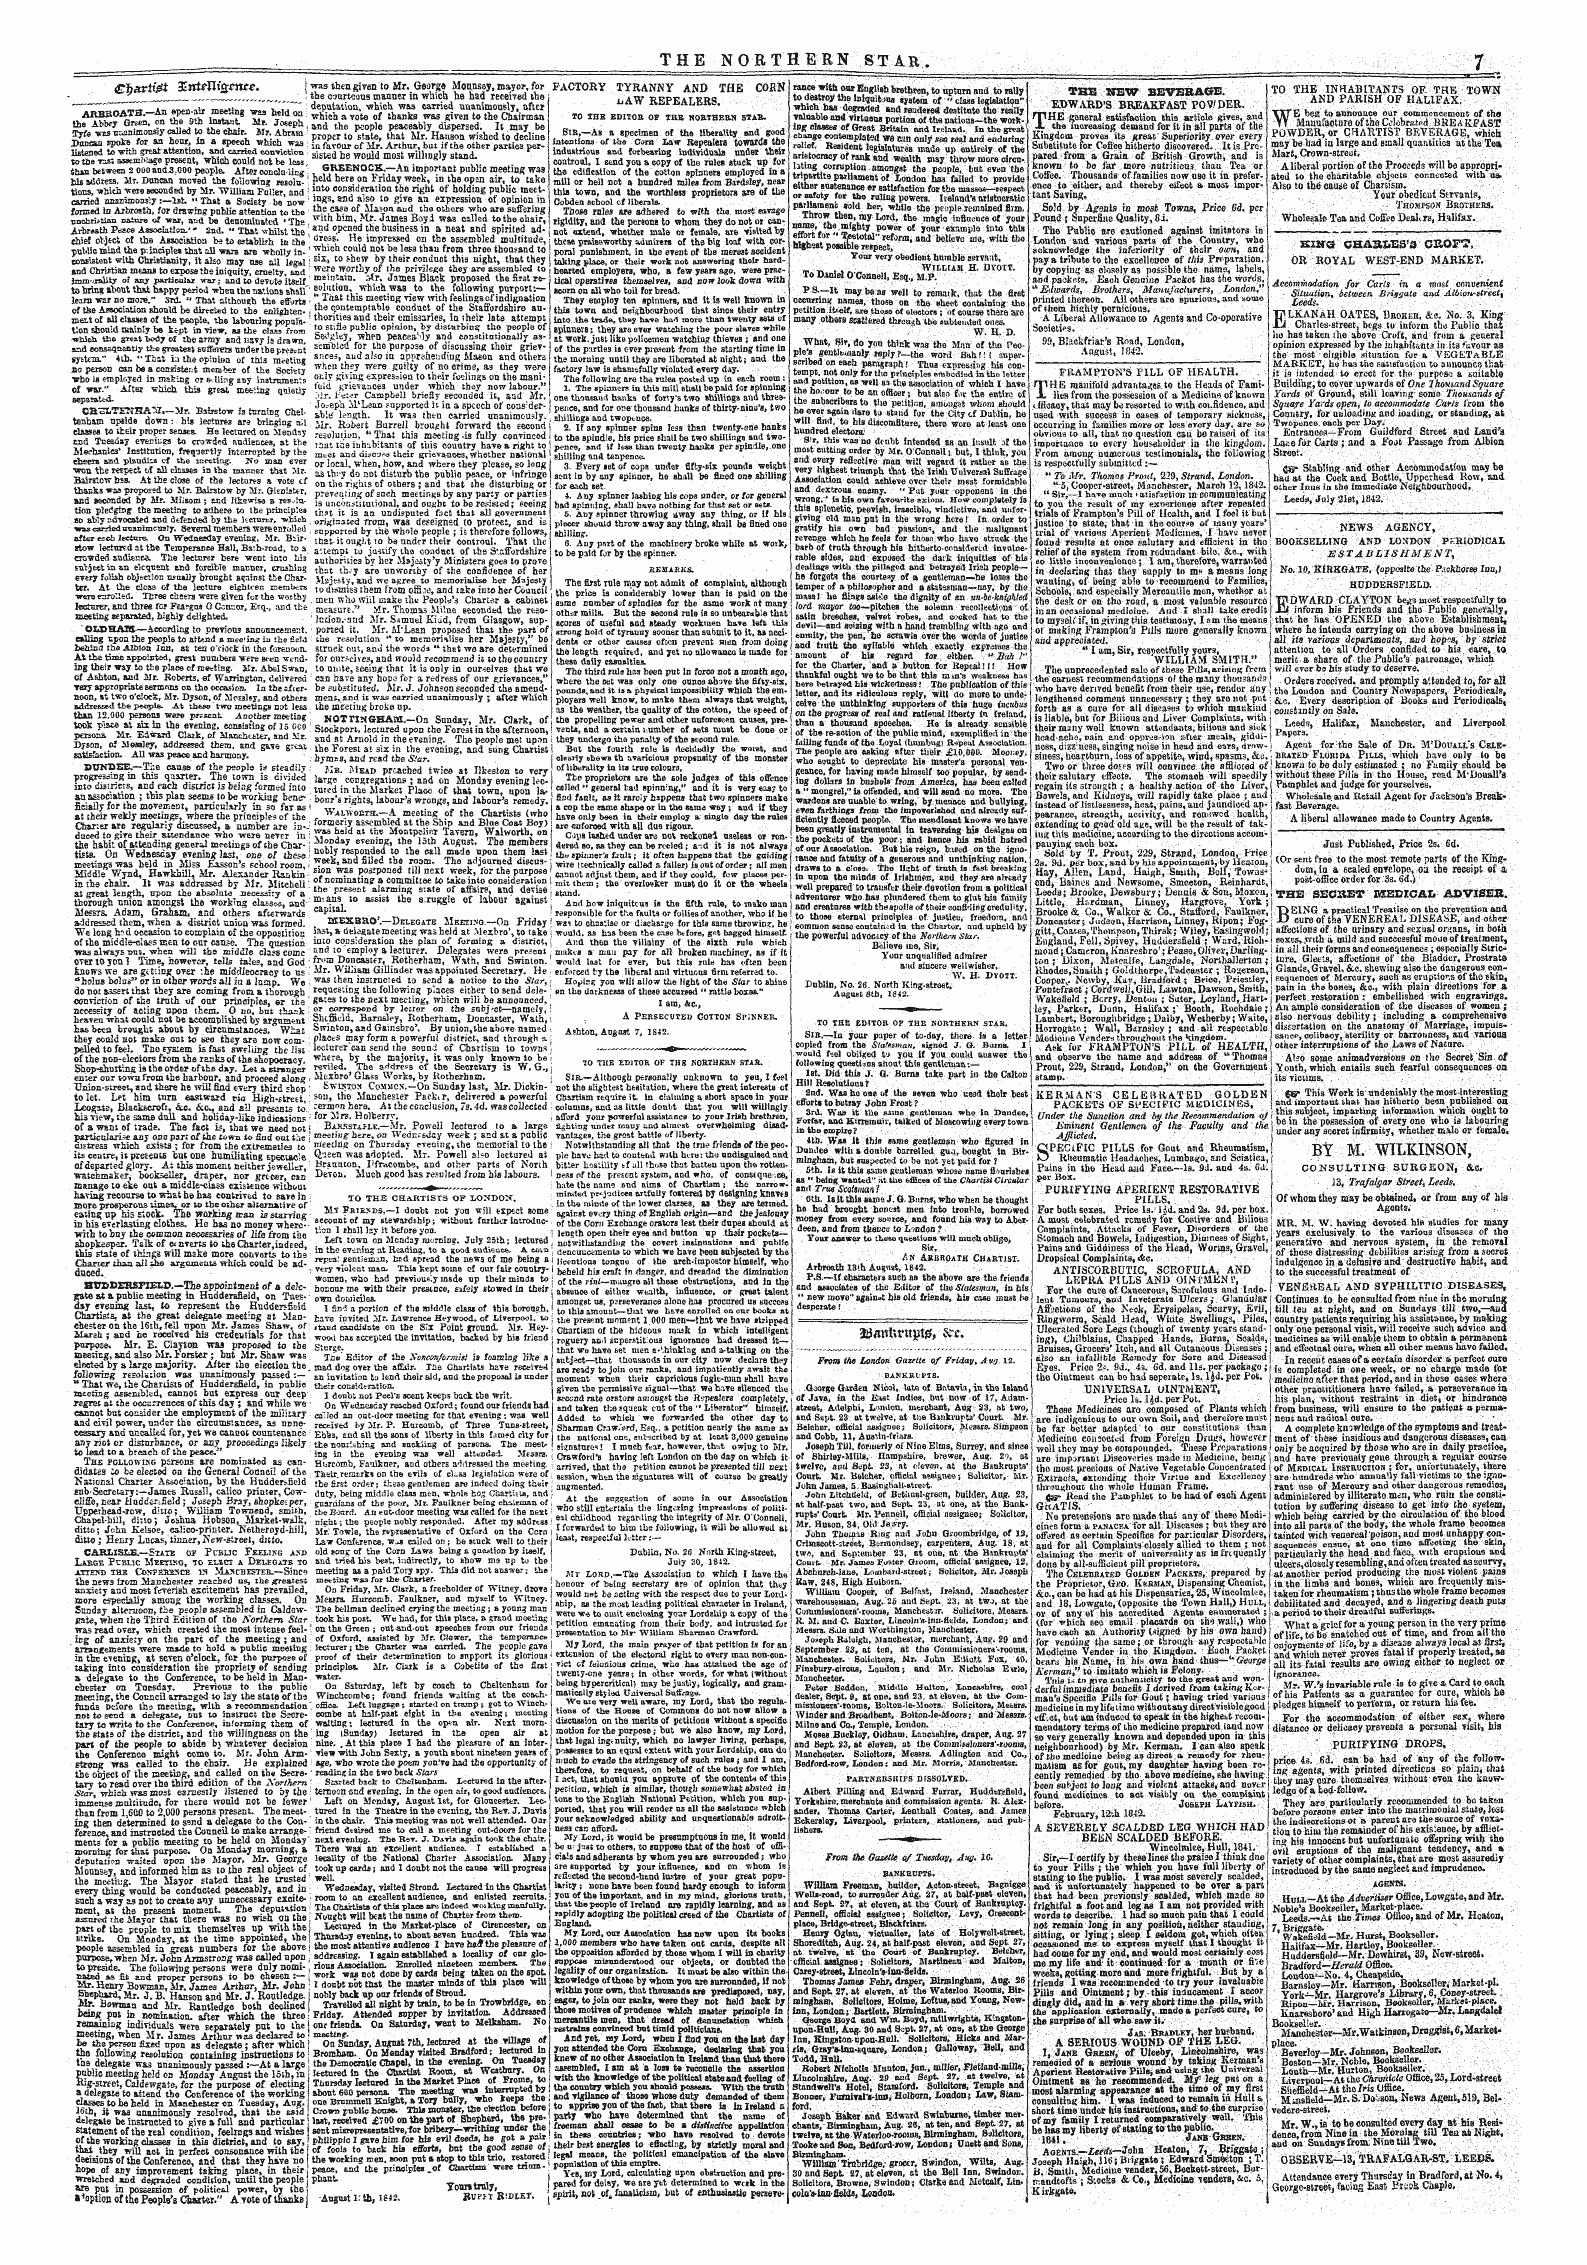 Northern Star (1837-1852): jS F Y, 2nd edition - &Lt;£L)Cirti0t Xnuuismte. J '" ' ^